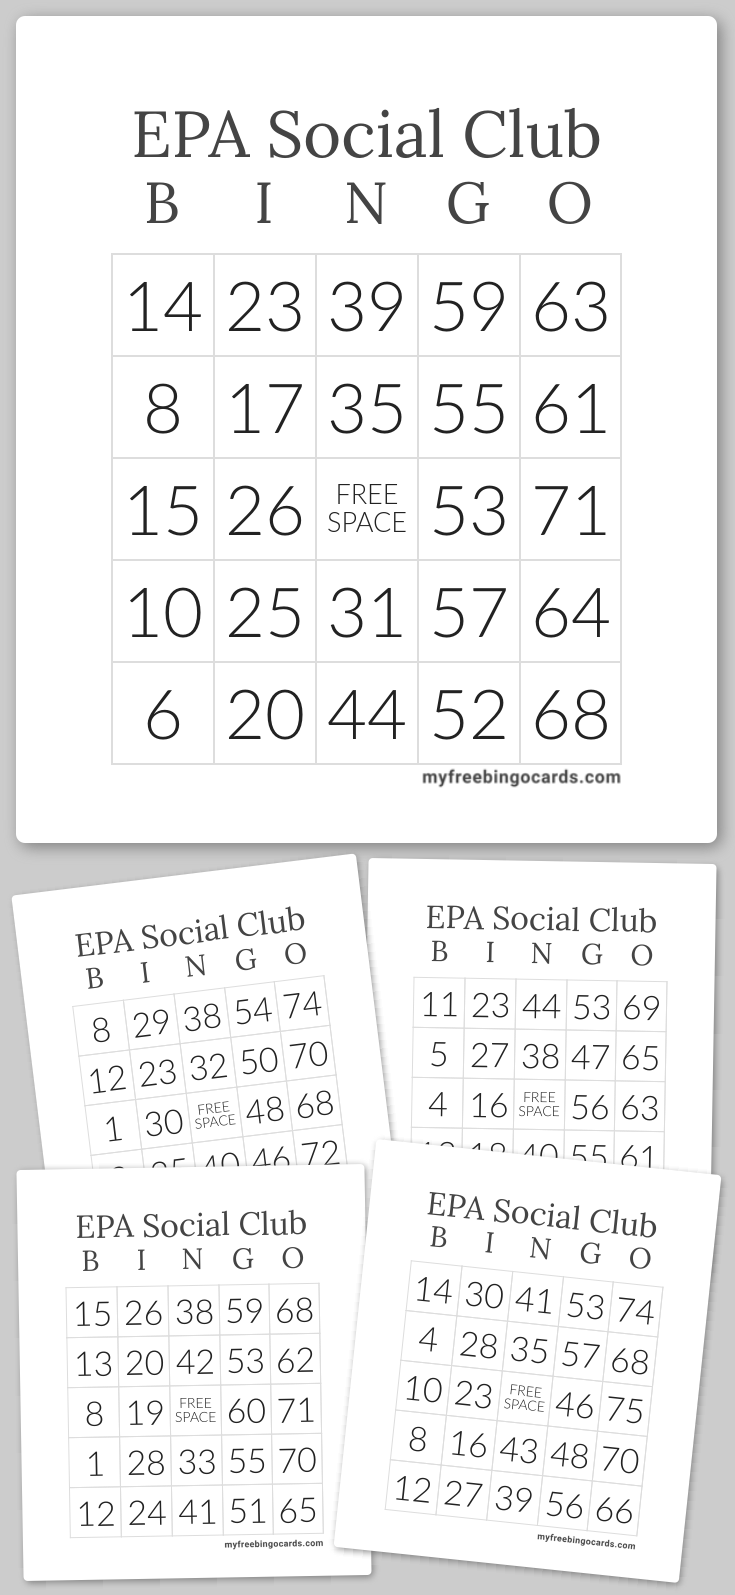 Virtual EPA Social Club BINGO